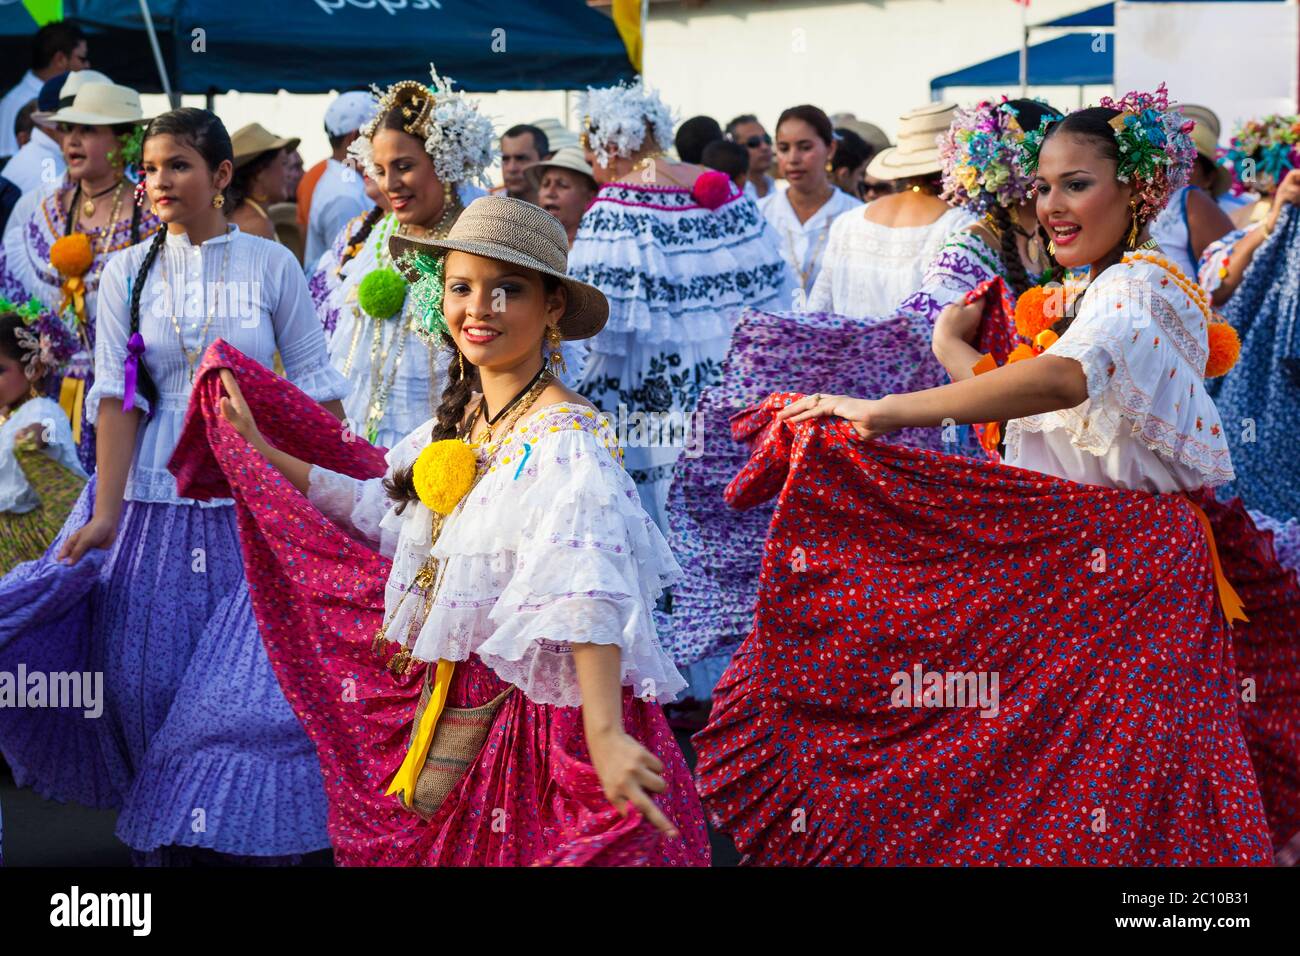 Mädchen in Polleras in der 'El Desfile de las Mil Polleras' (tausend Polleras), Las Tablas, Provinz Los Santos, Republik Panama. Stockfoto